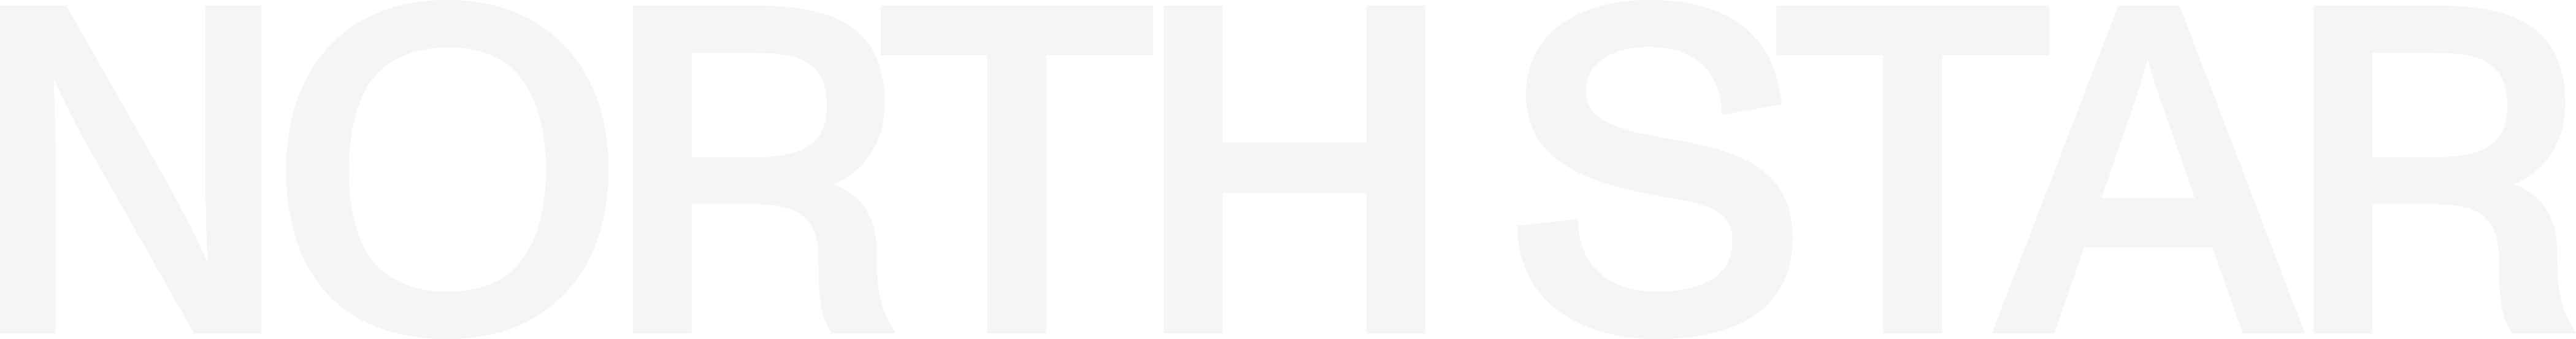 overlay-logo-image